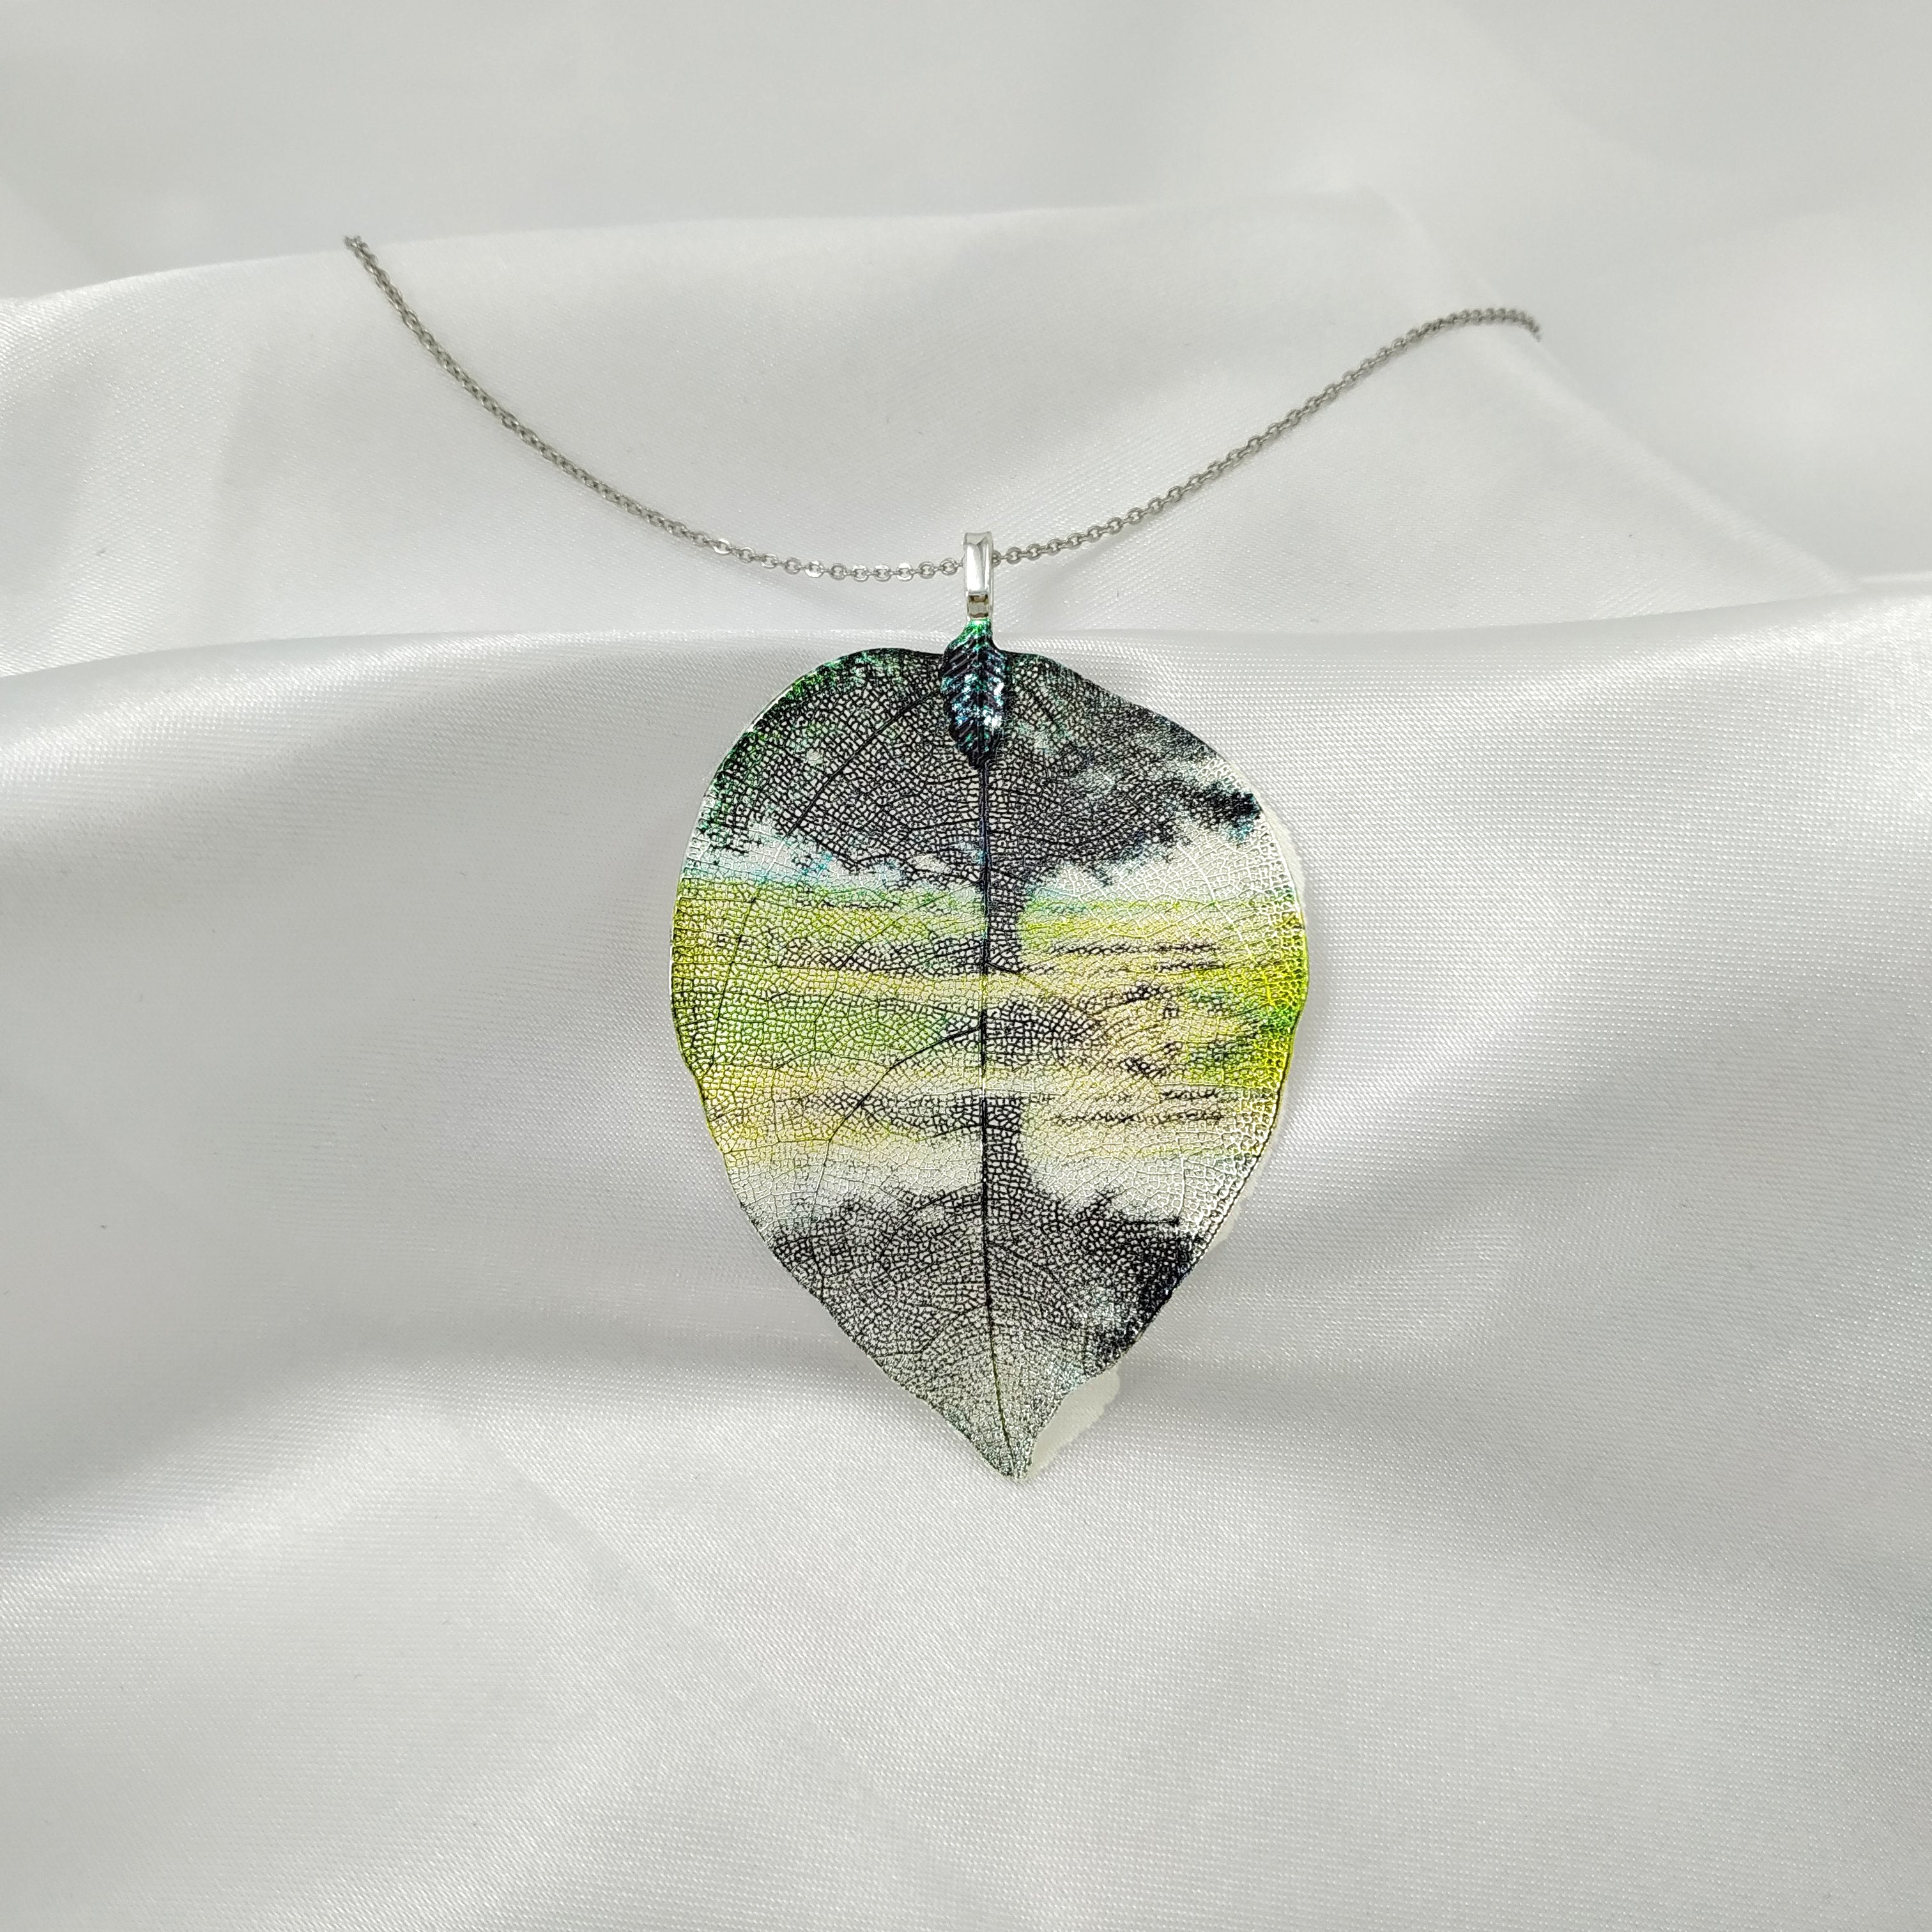 Landscape - Real Leaf Pendant Necklace